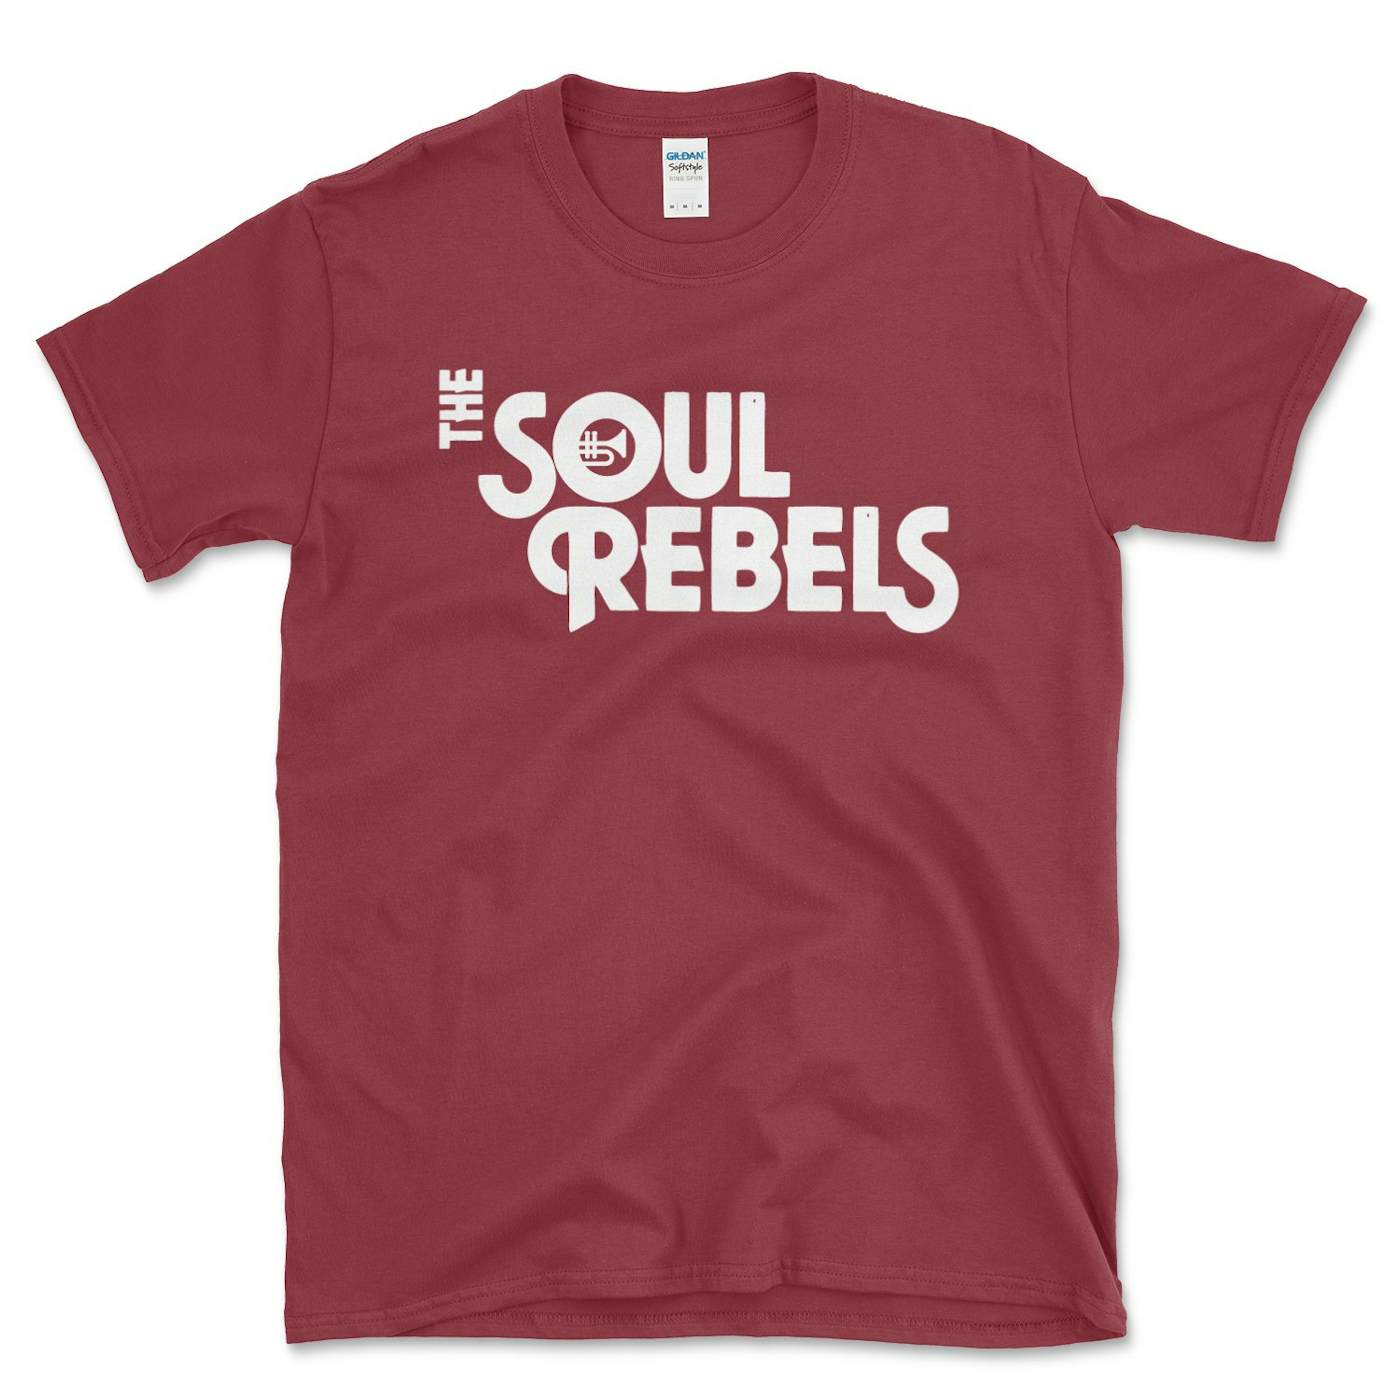 Soul Rebels Unisex Logo Tee Shirt - Cardinal Red